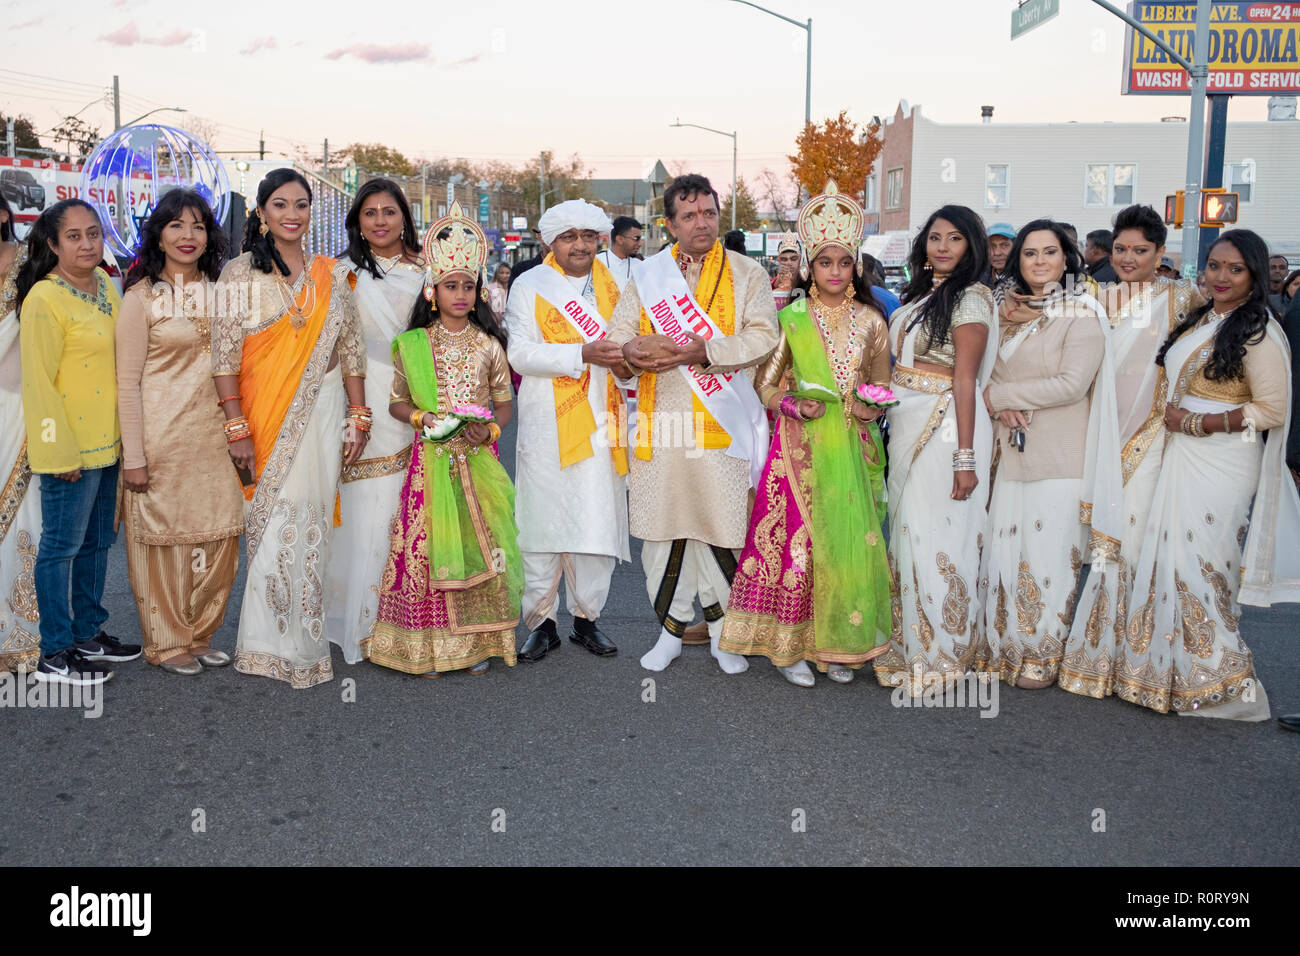 Die Teilnehmer des Diwali motorcade, viele in der gleichen Sari, pose mit dem Grand Marshall & Special guest. In South Richmond Hill, Queens, New York. Stockfoto